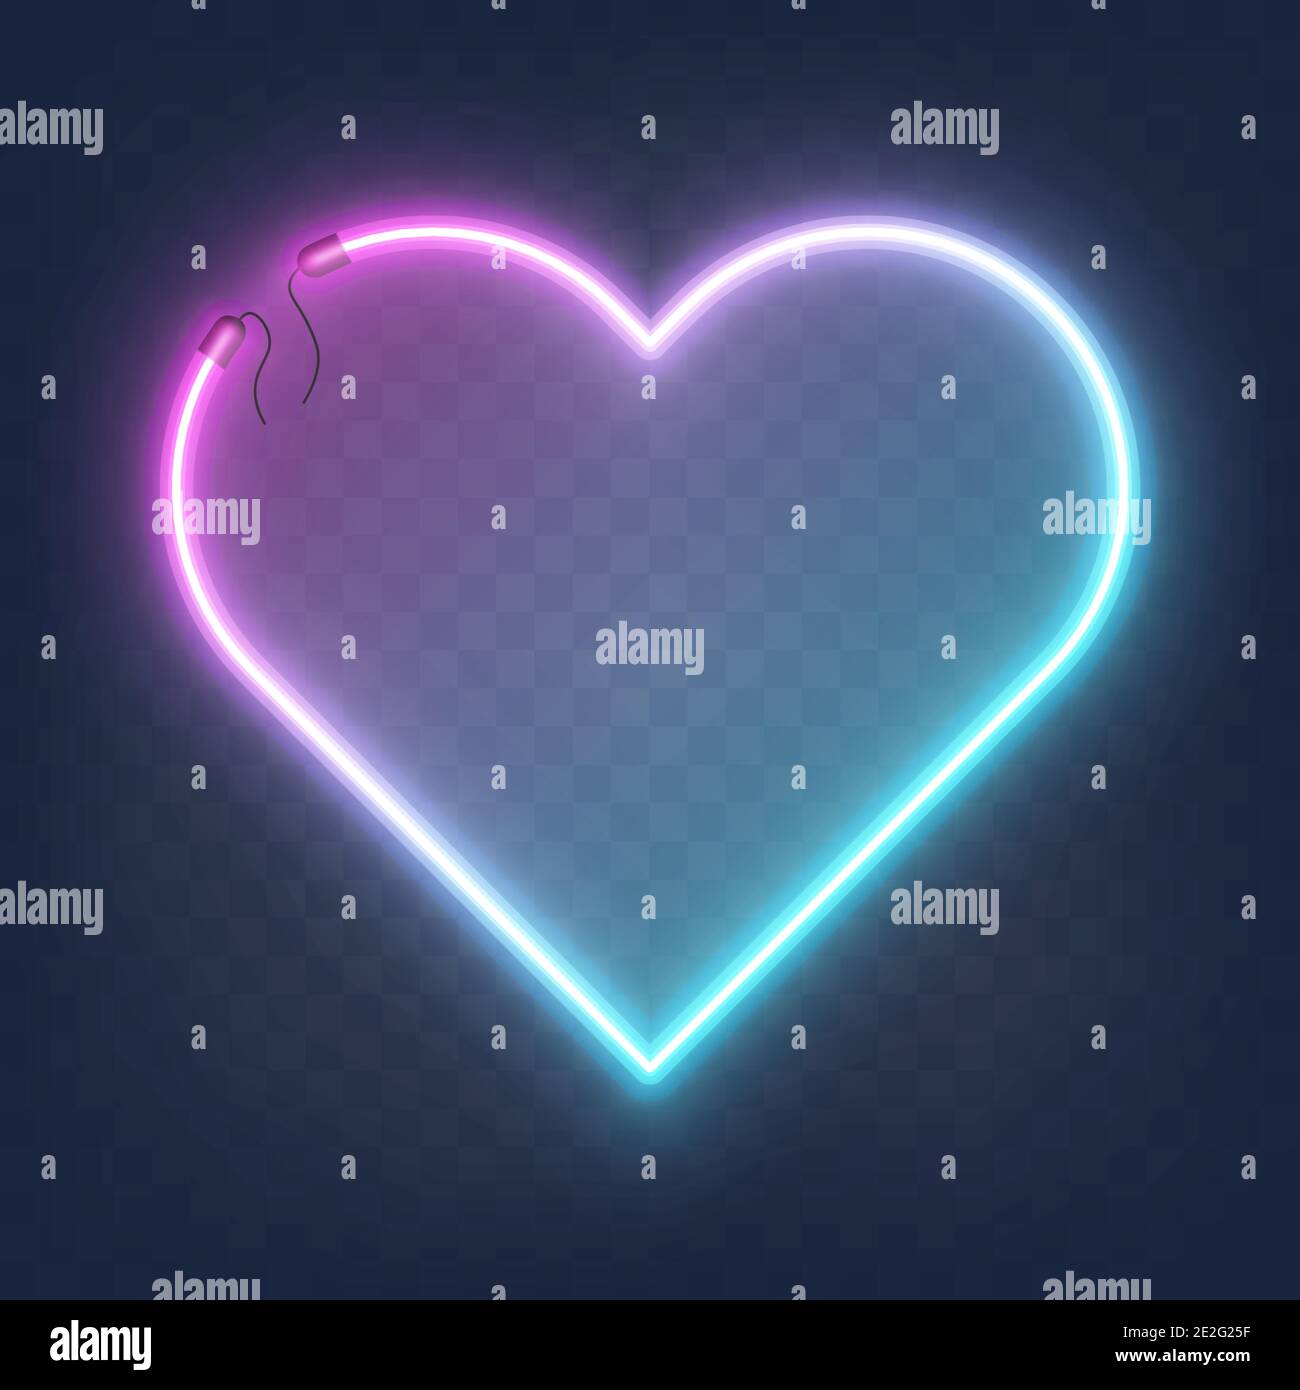 Cornice cardiaca al neon con forma luminosa e realistica isolata su sfondo trasparente con posizione per il testo. Effetto neon brillante e luminoso con fili, Vector Illustrazione Vettoriale